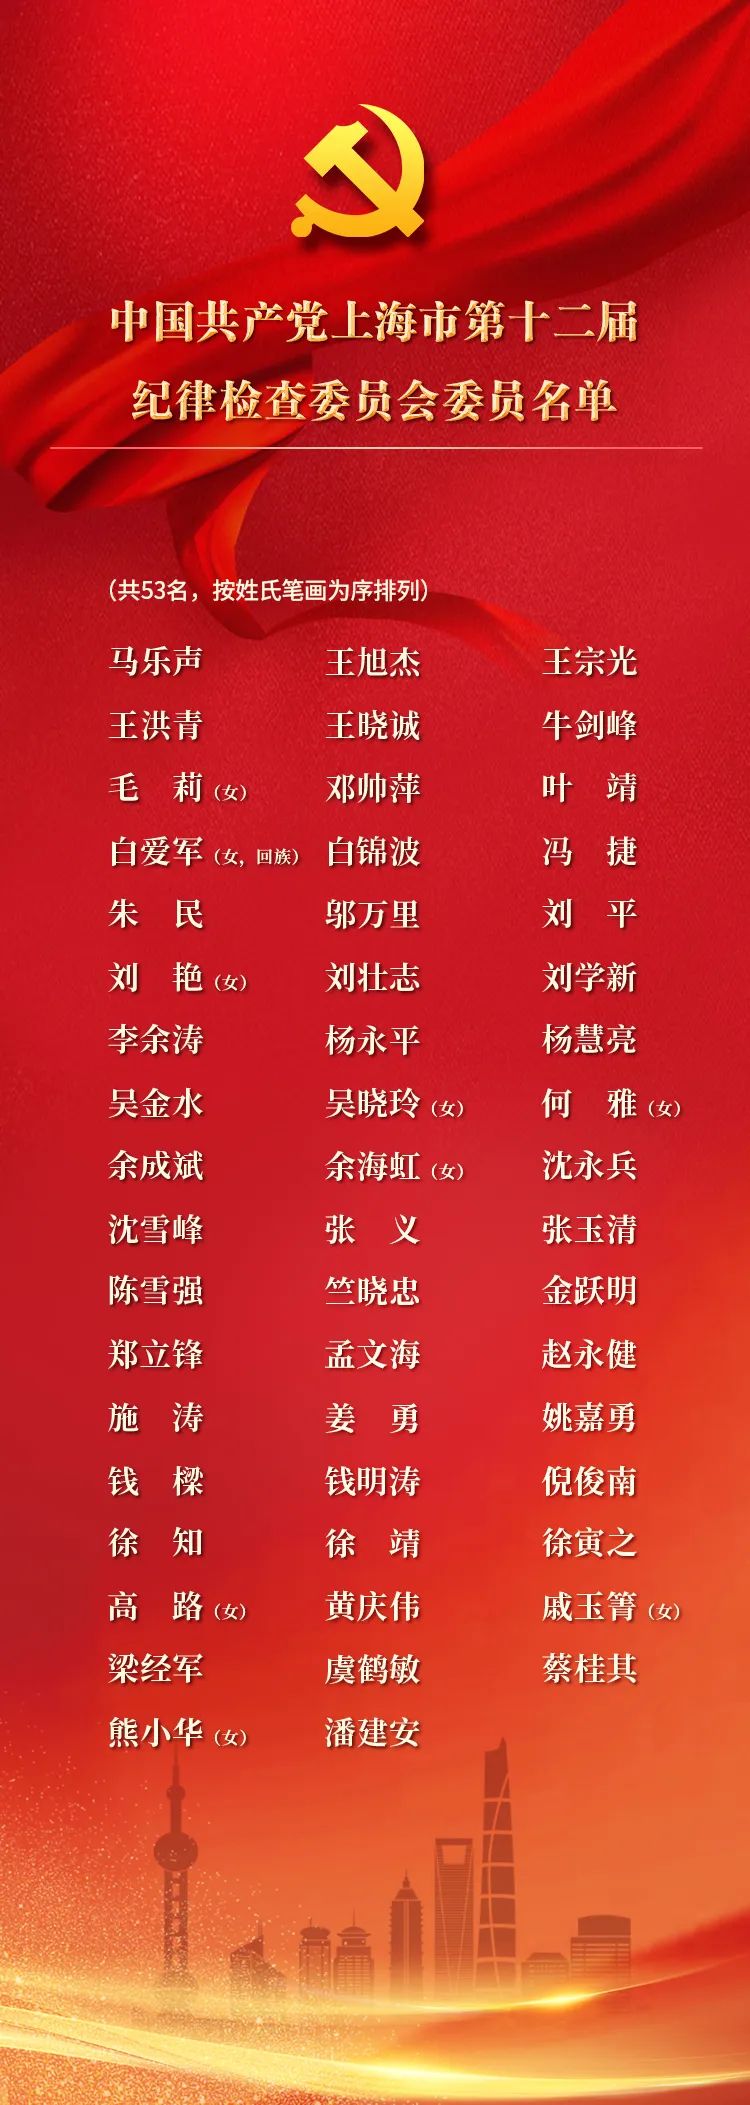 中共上海市第十二届纪律检查委员会委员名单.jpg